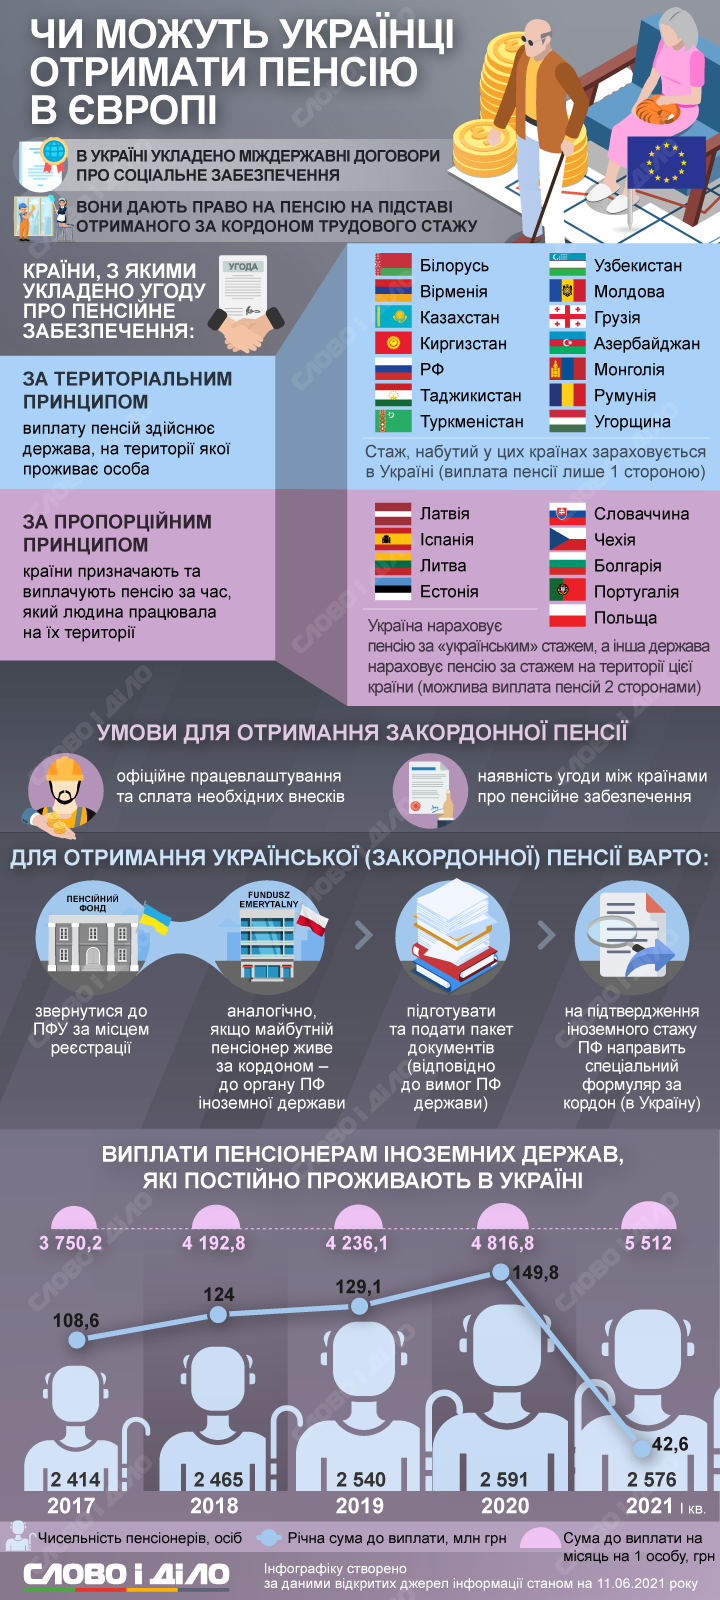 Пенсии украинцам за рубежом. В каких странах и на каких условиях можно получать выплаты – на инфографике.